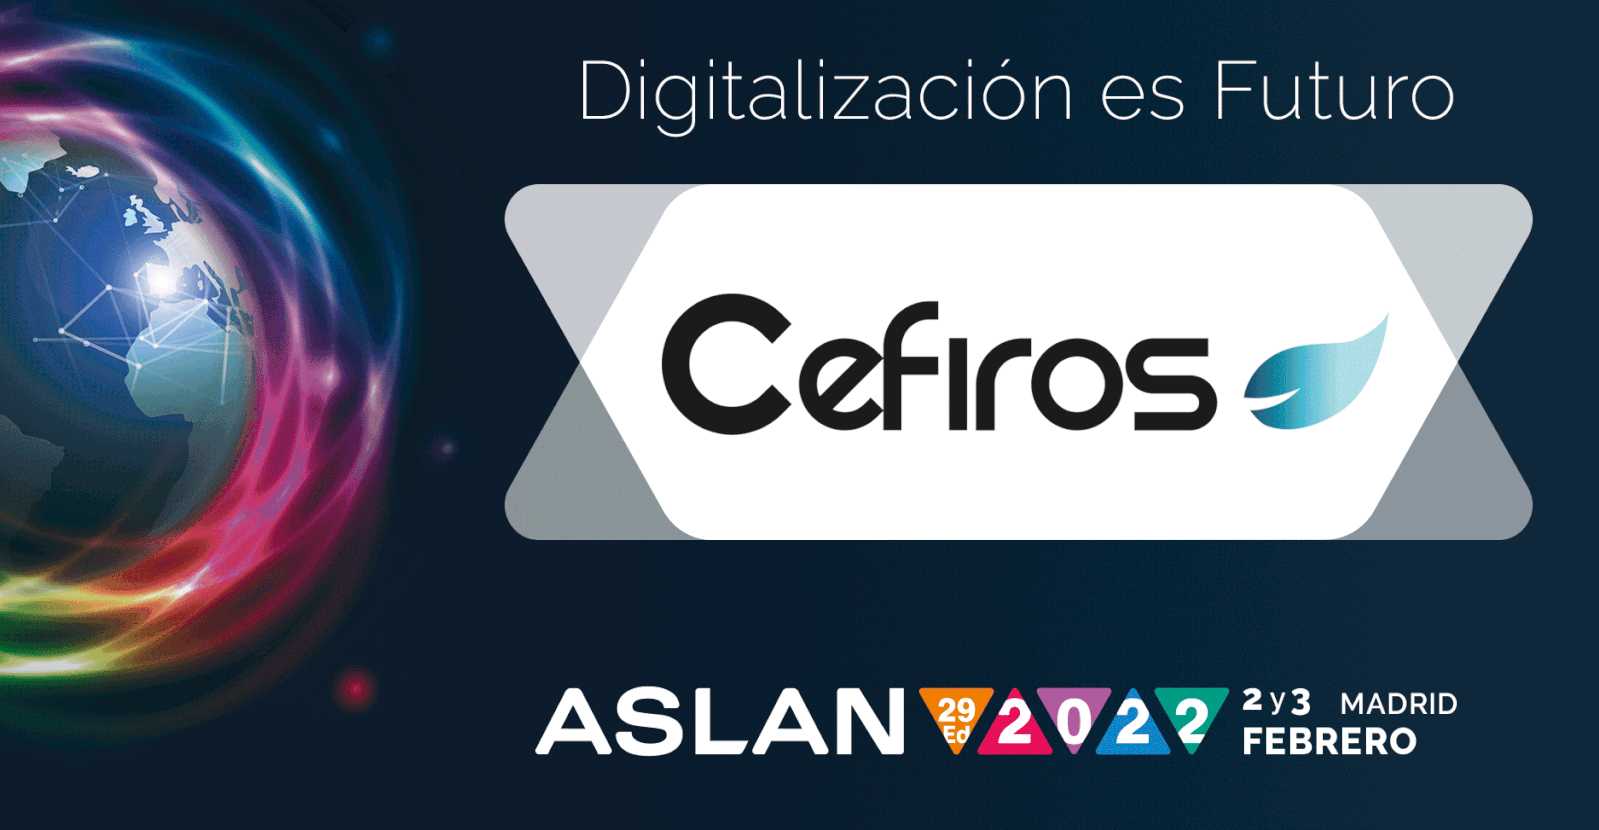 Cefiros asistirá a la 29ª edición del Congreso&EXPO ASLAN 2022 